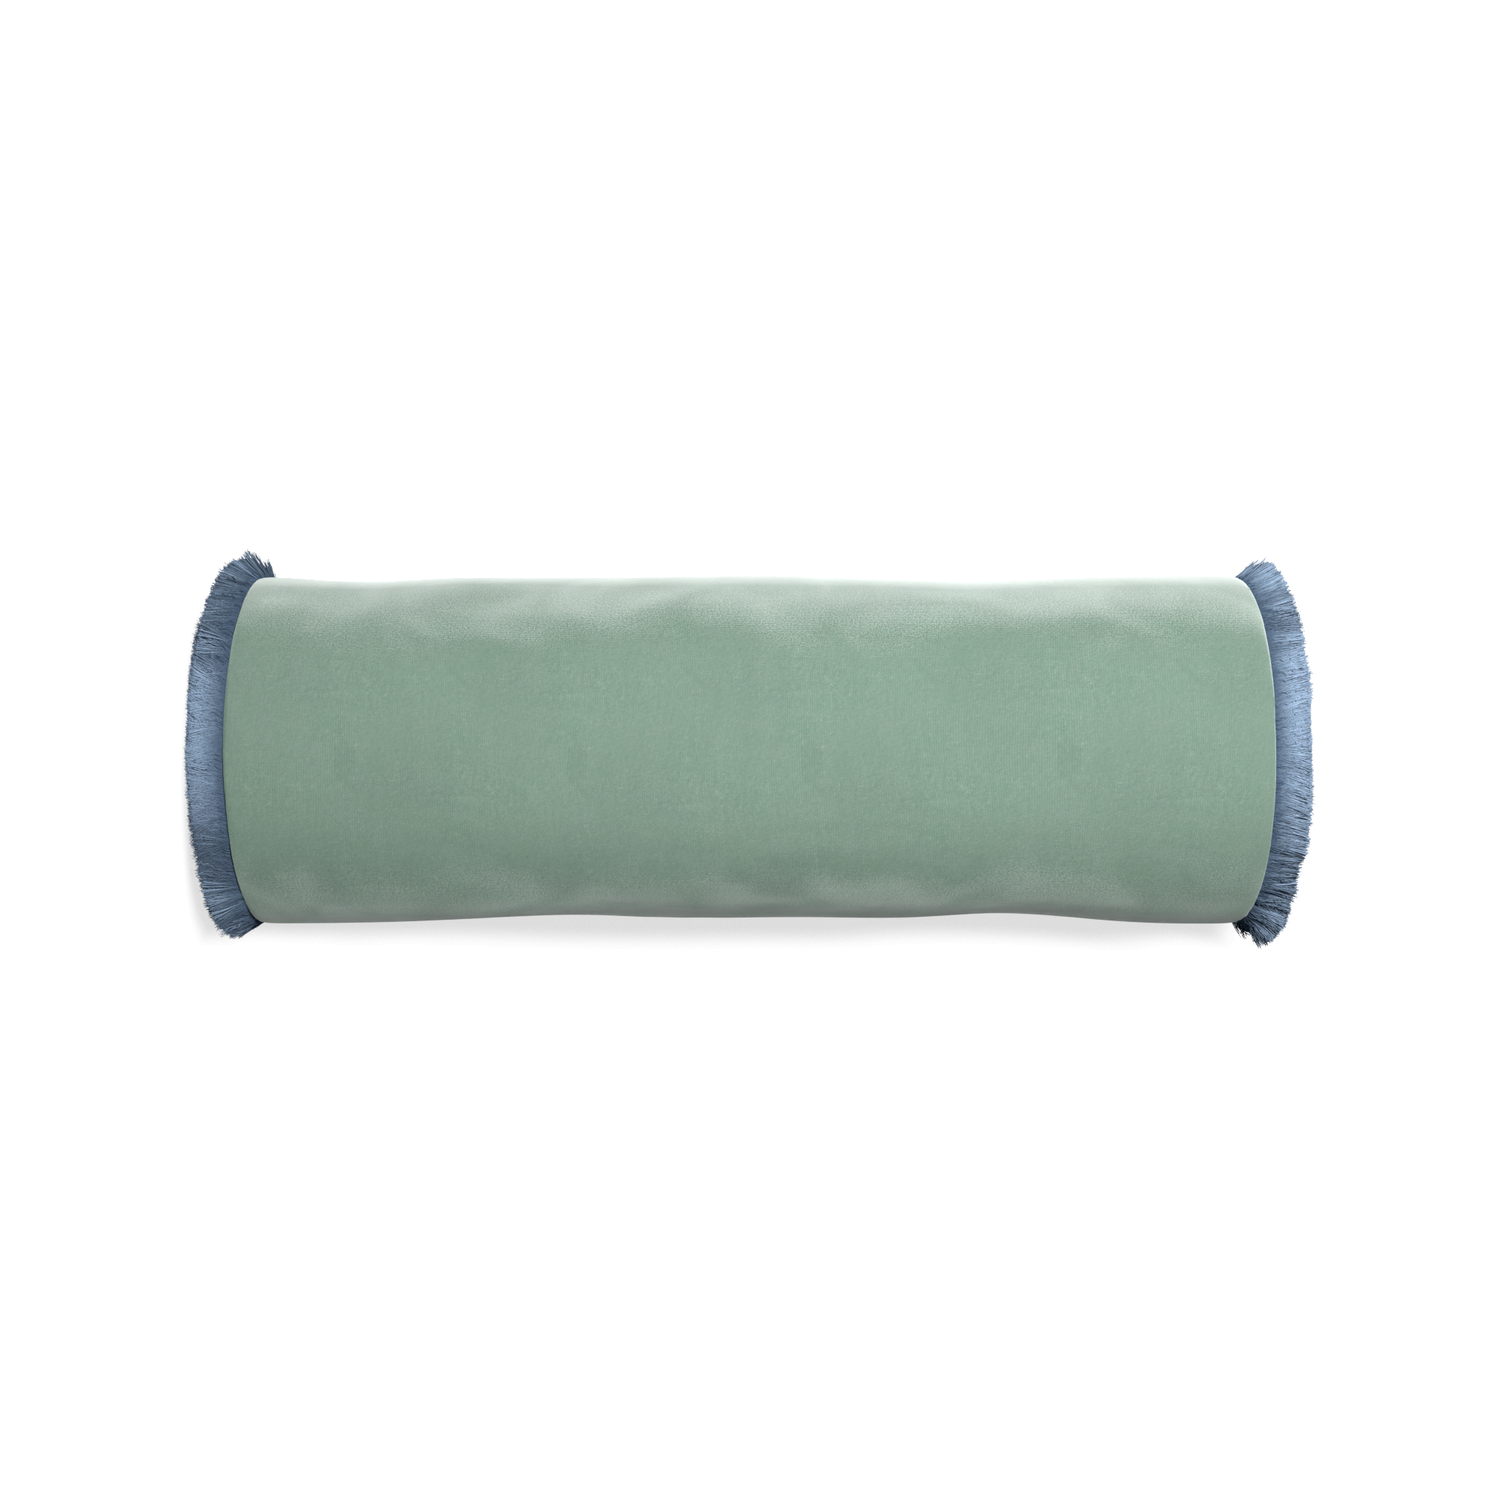 bolster blue green velvet pillow with sky blue fringe